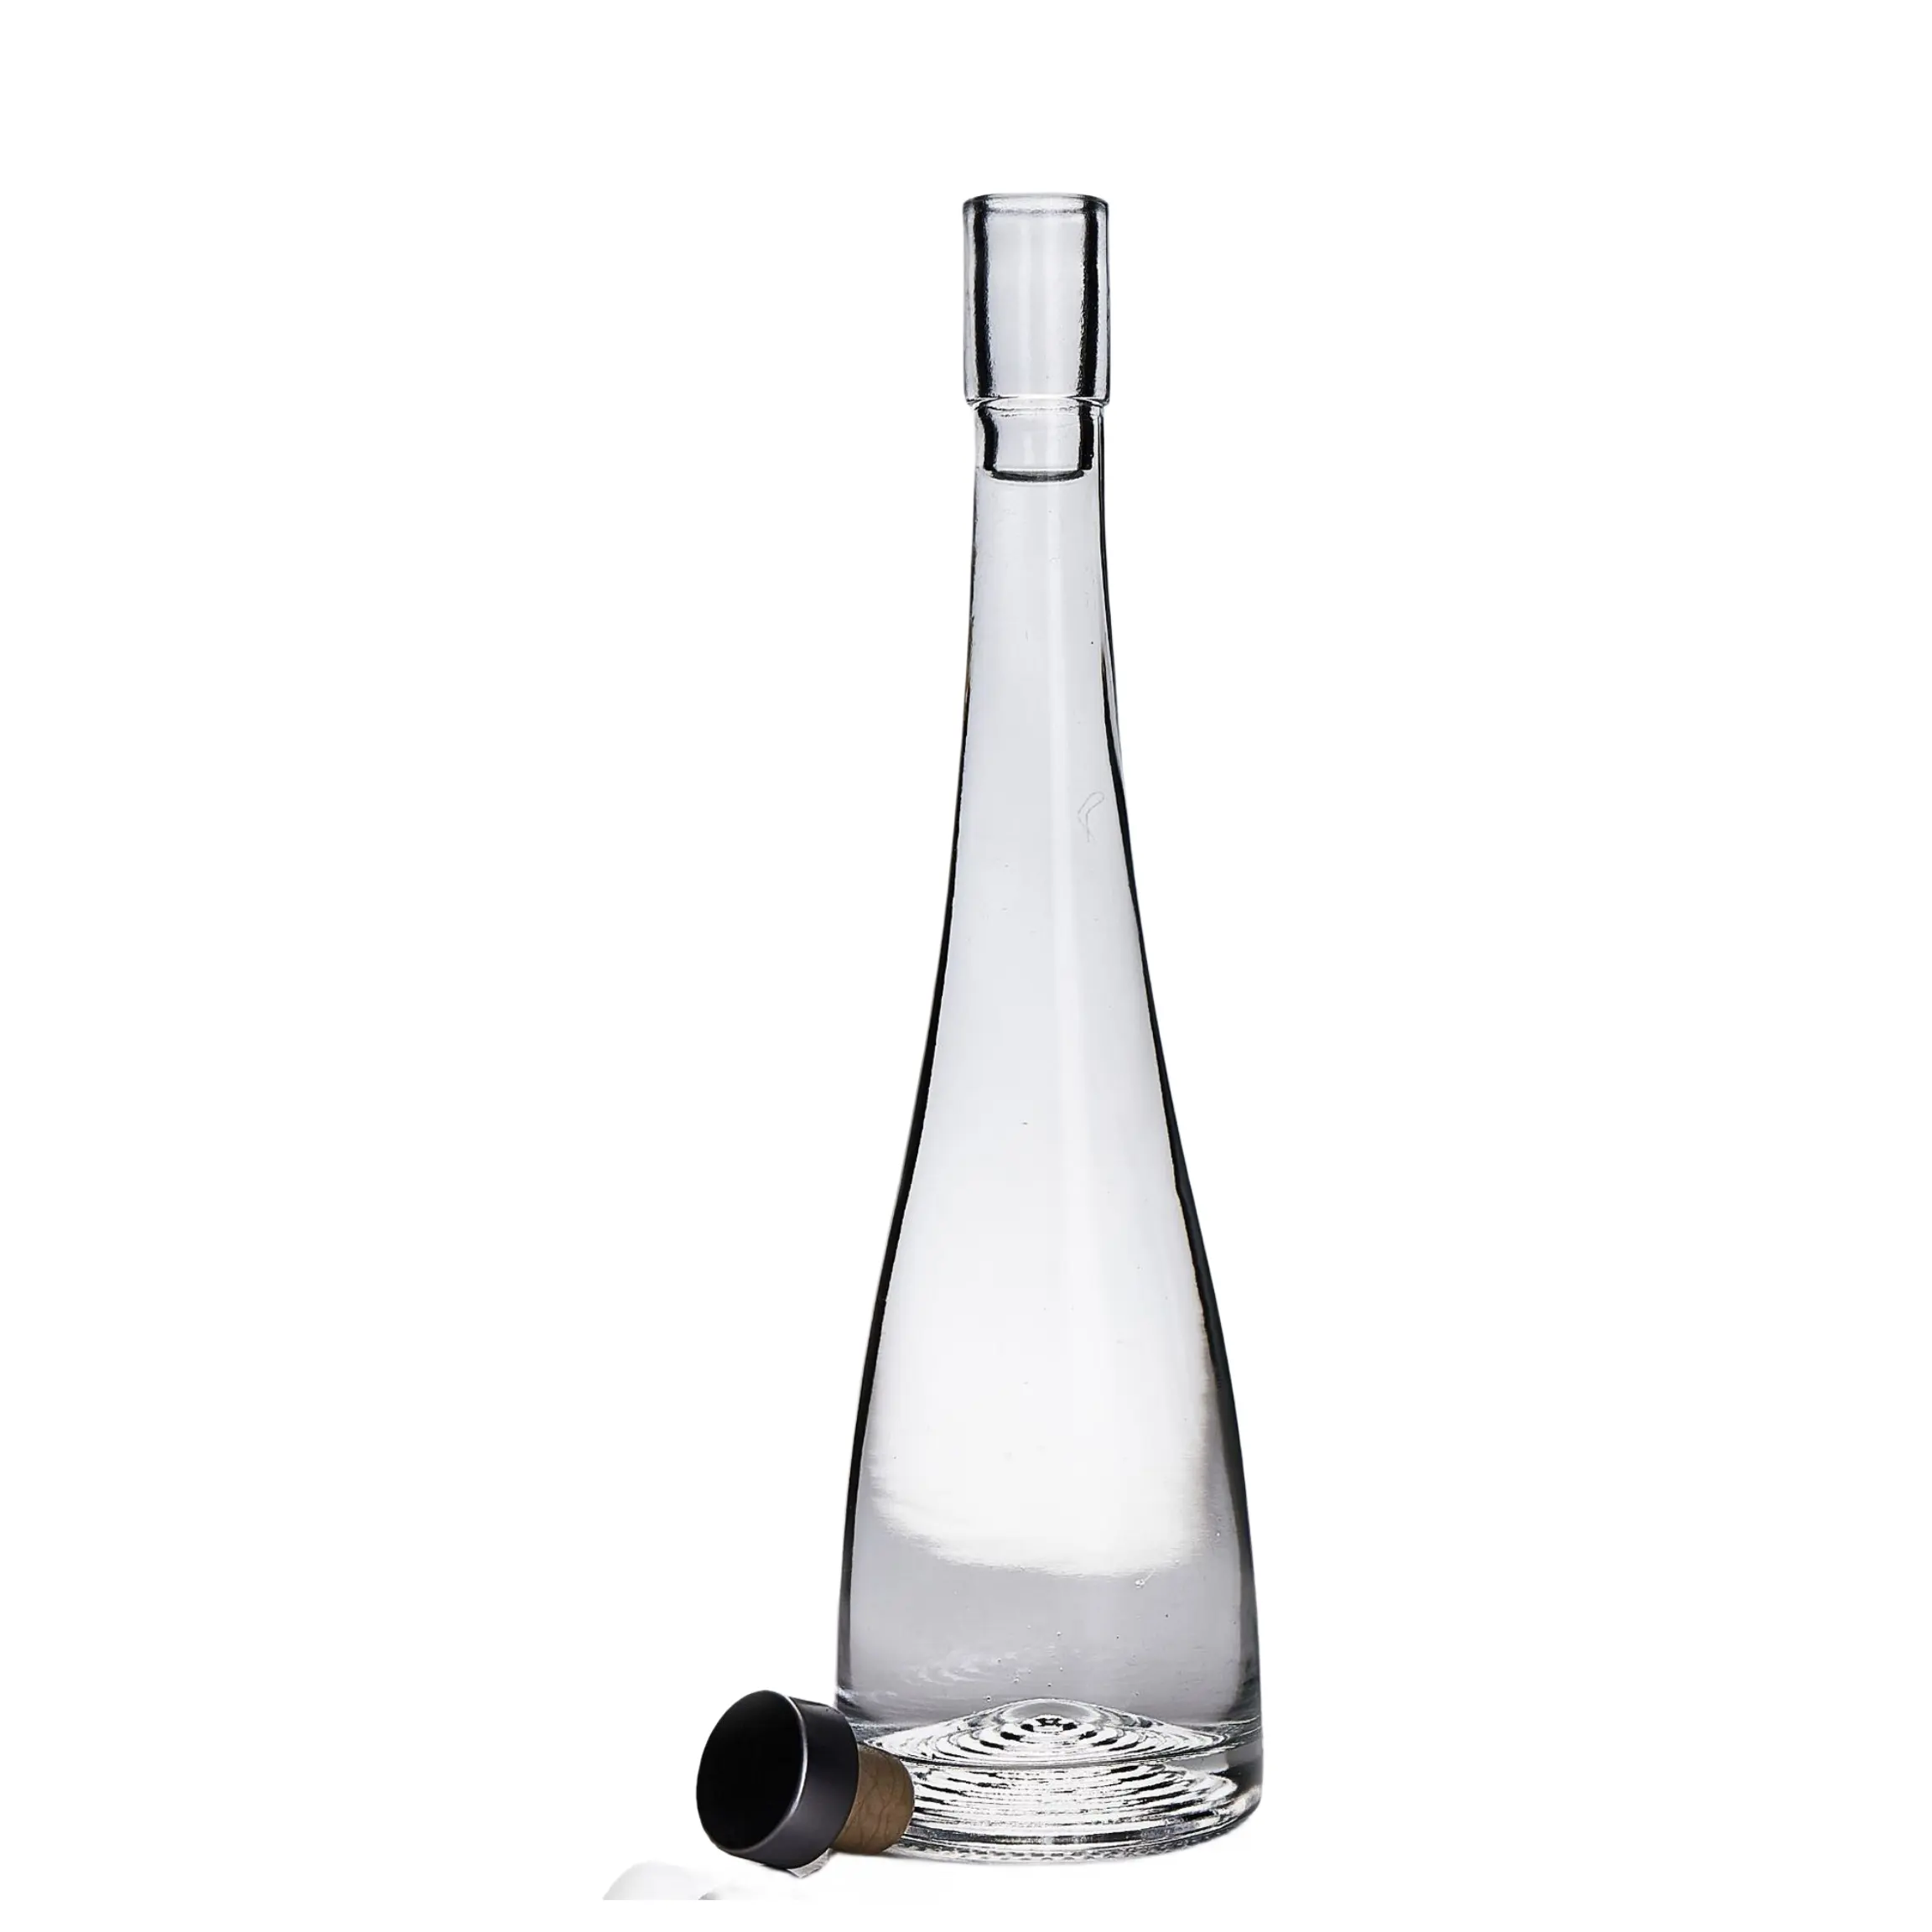 زجاجة نبيذ فوار شفافة 380 مللي مصنع موثوق به زجاجة كحول مخصصة زجاجة تكيلا زجاجية مزودة بغطاء فلين